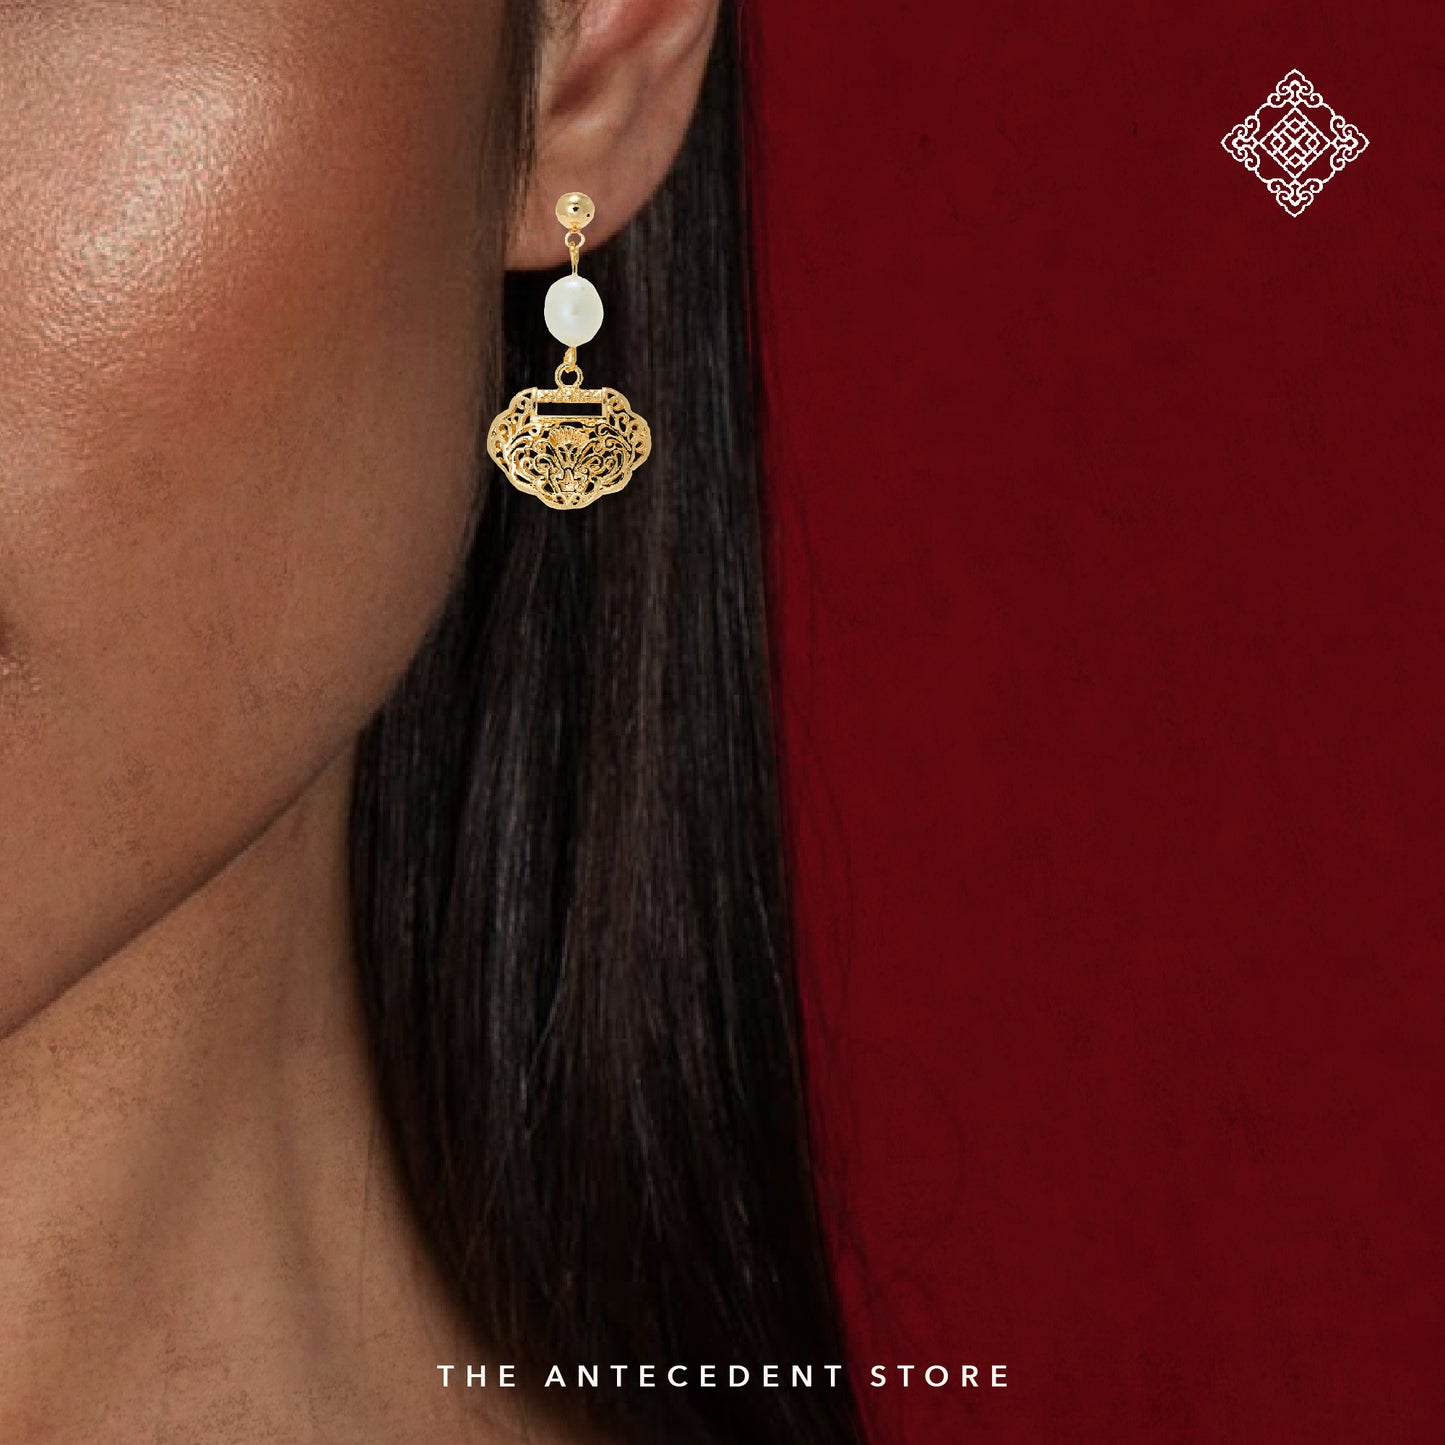 【如意锁】Longevity Lock Earrings With Freshwater Pearl - 14K Real Gold Plated Jewelry